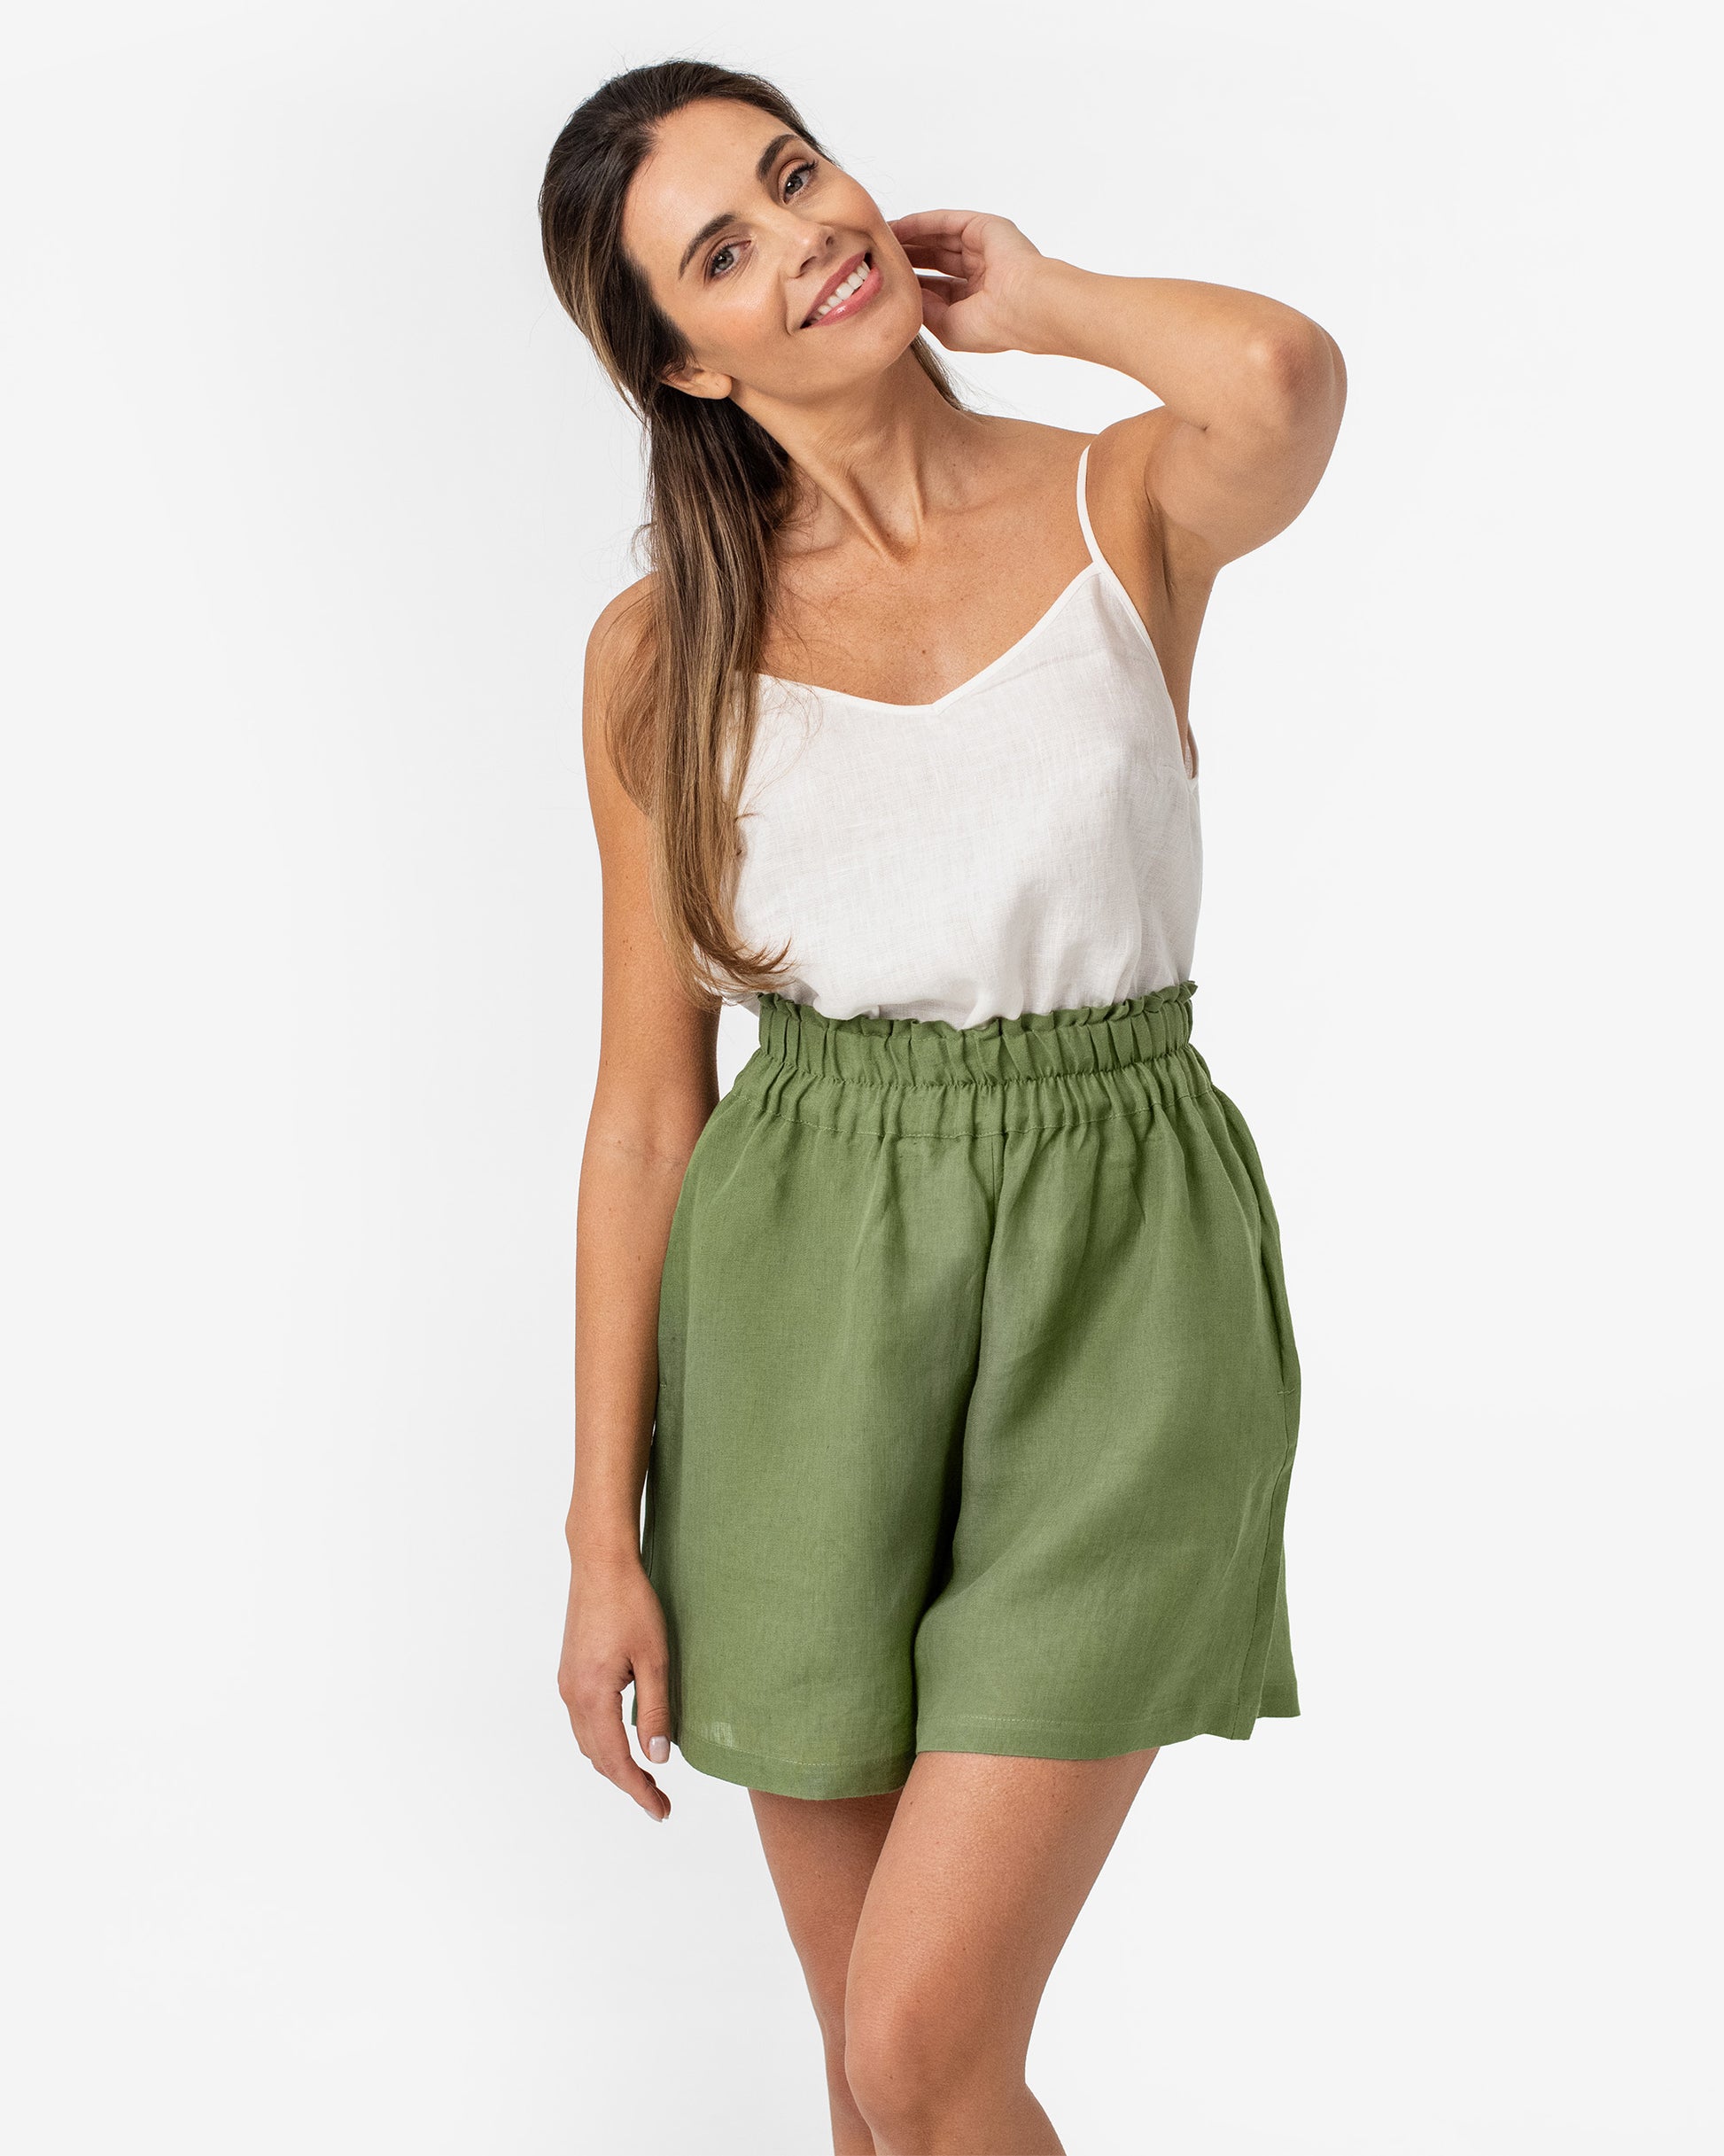 Linen Shorts for Women, High Waisted Linen Shorts